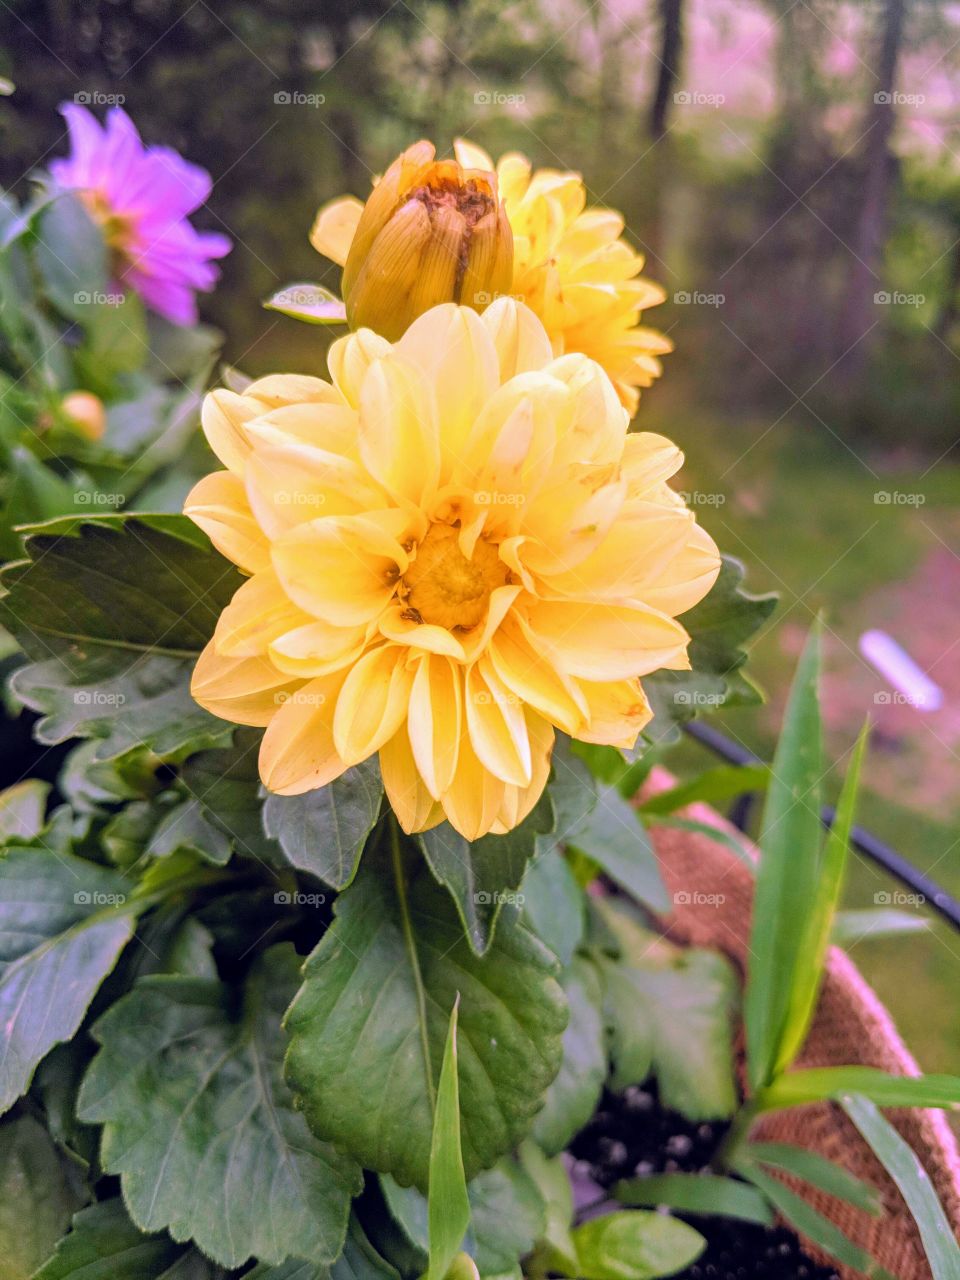 Dahlia yellow flowers